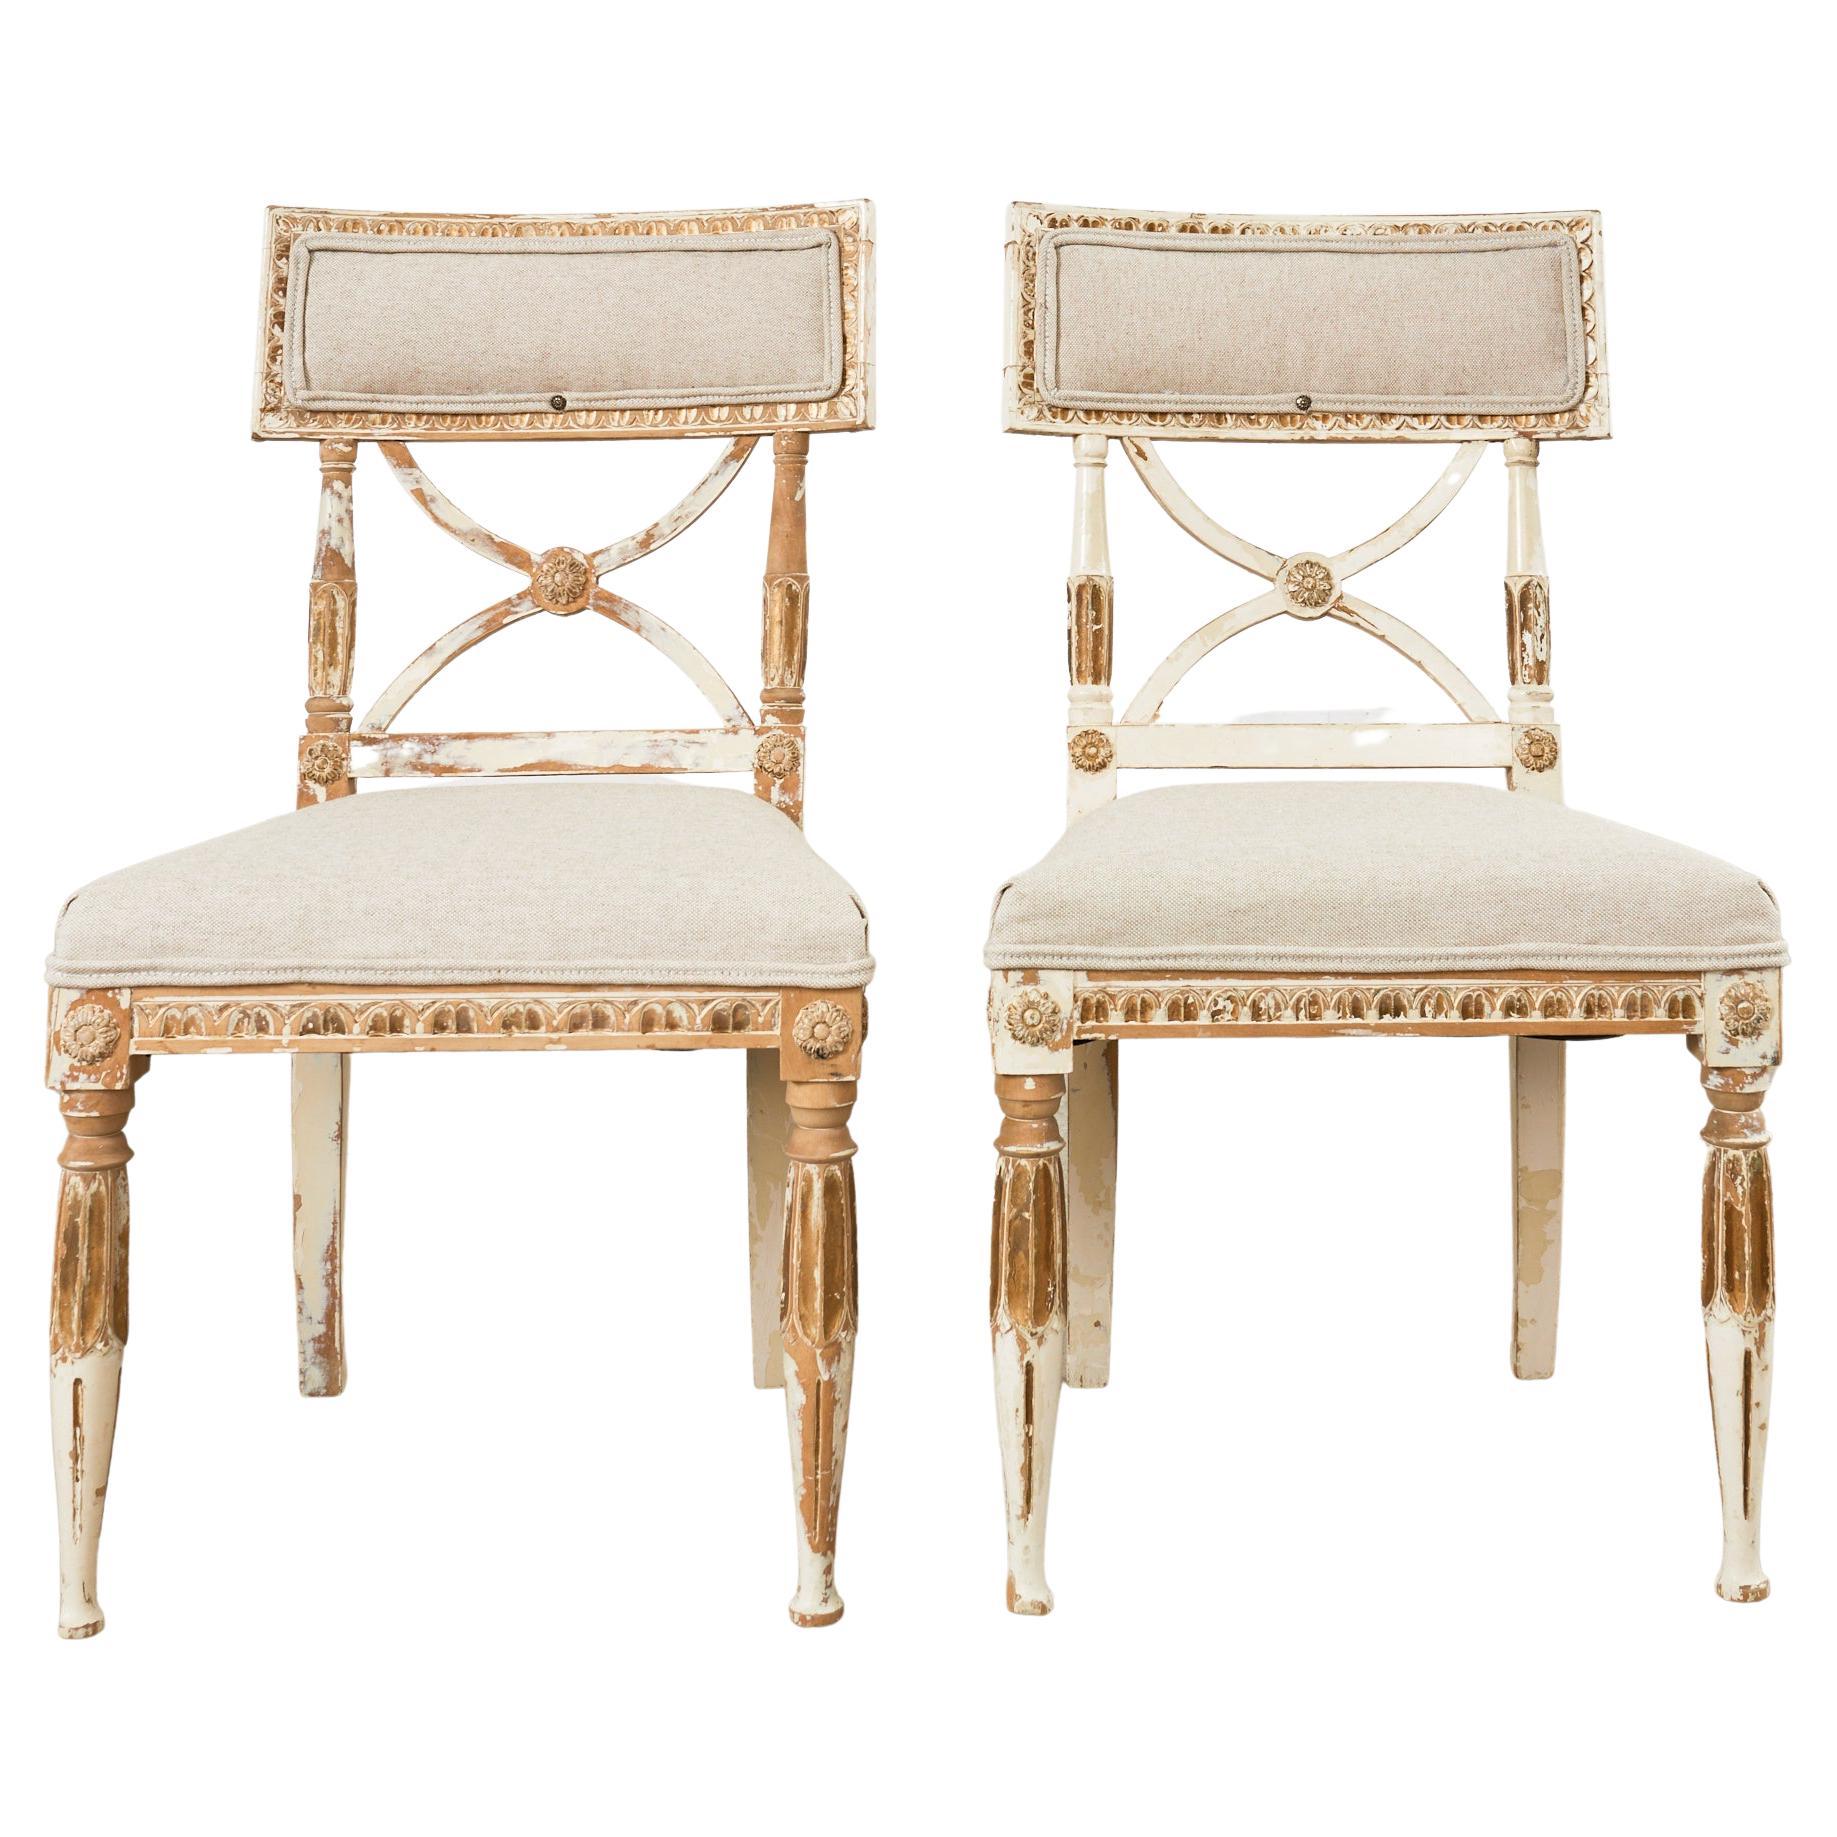 Paire de chaises de salon suédoises peintes de style gustavien néoclassique